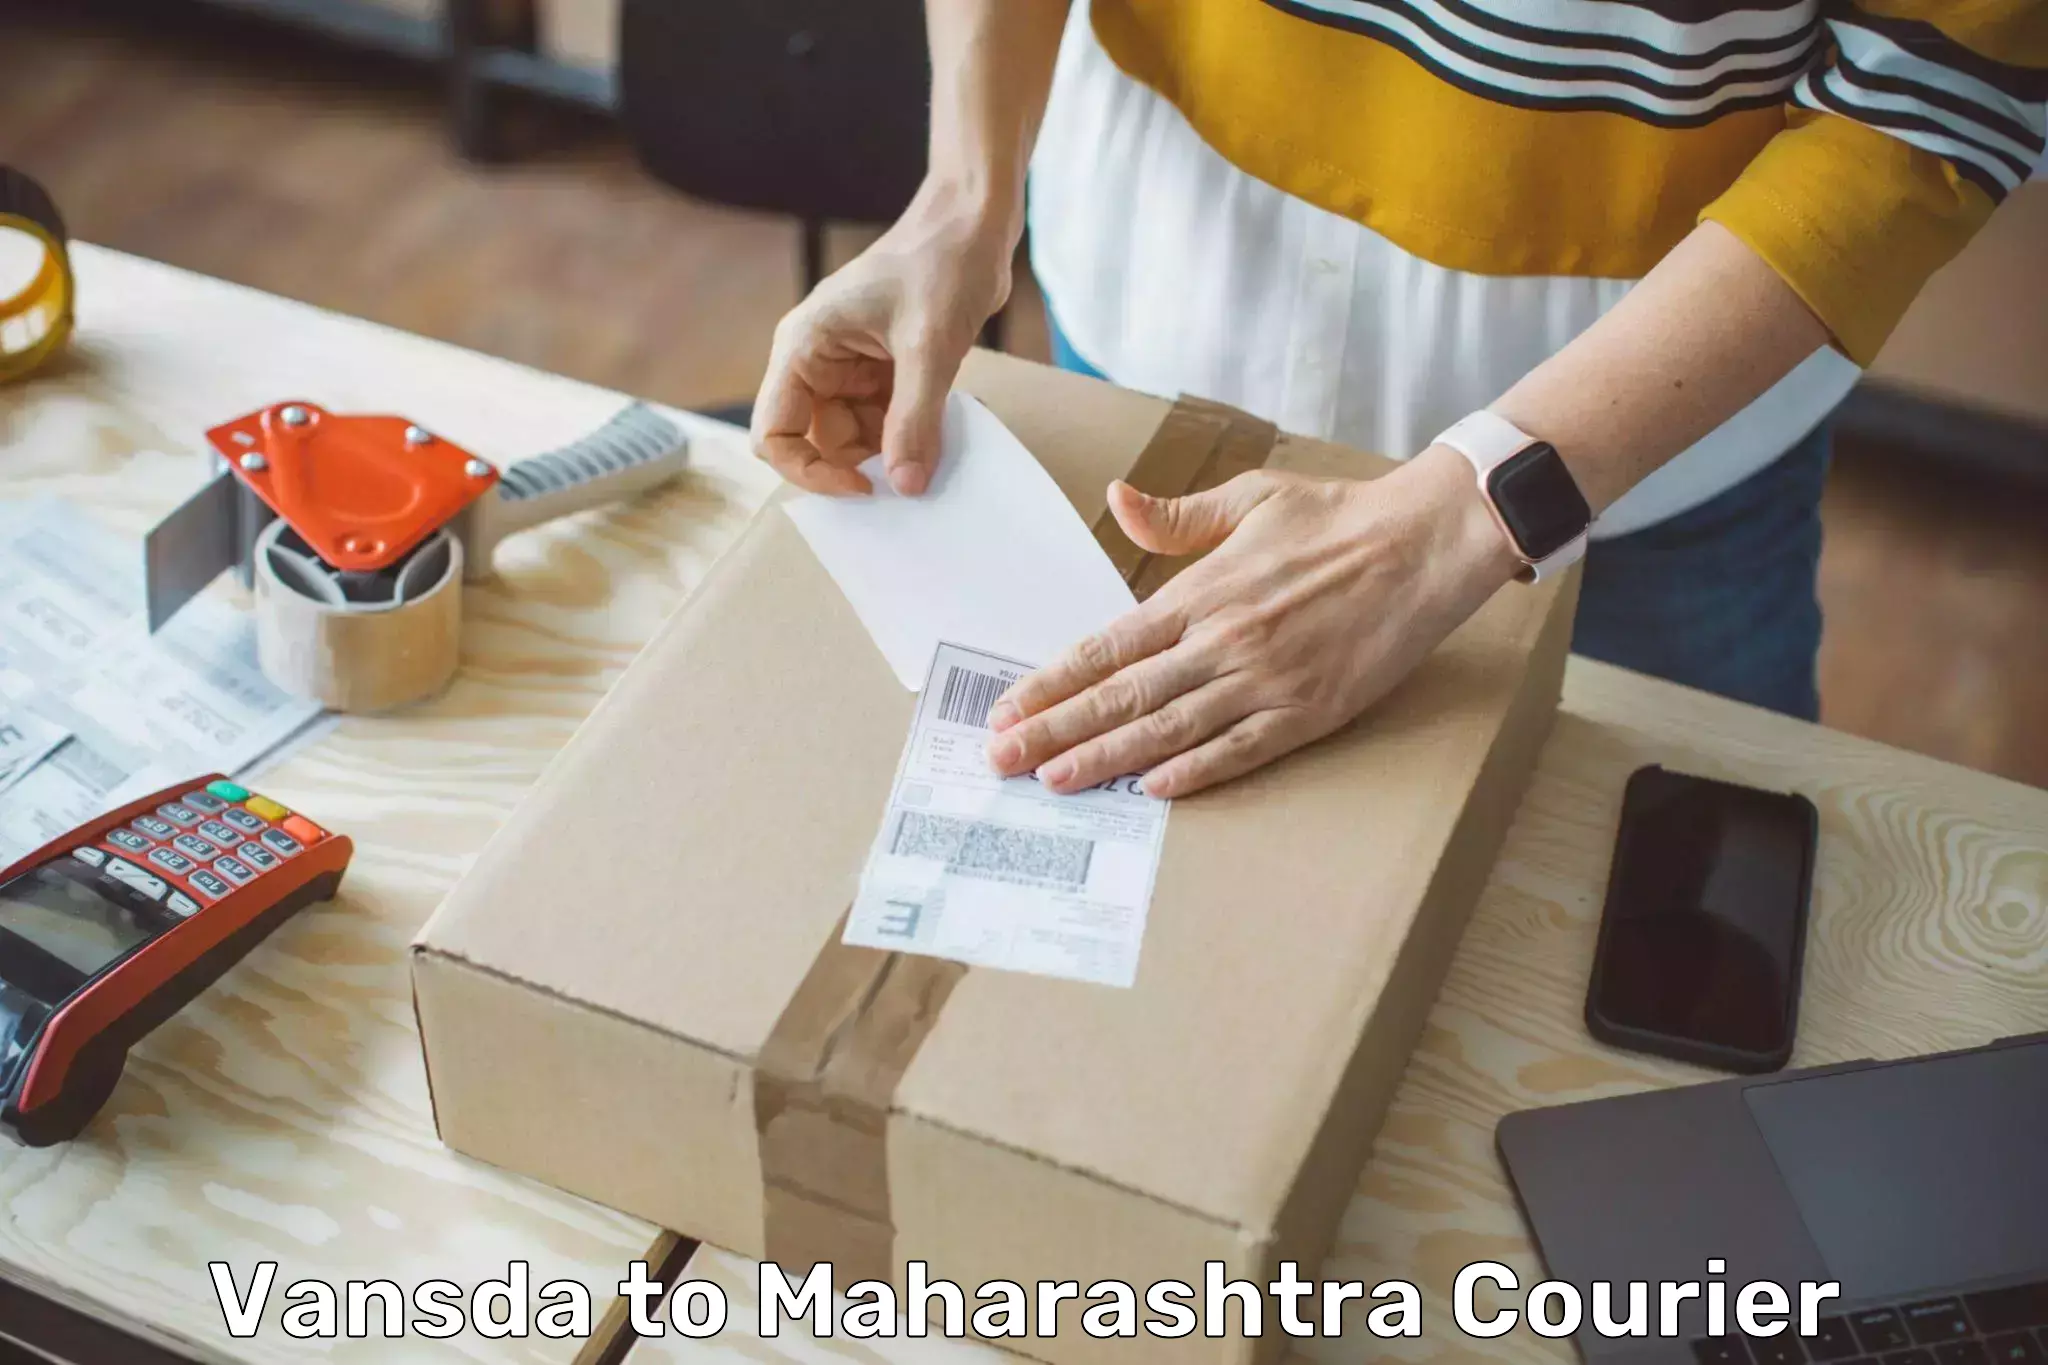 Express logistics providers Vansda to Maharashtra